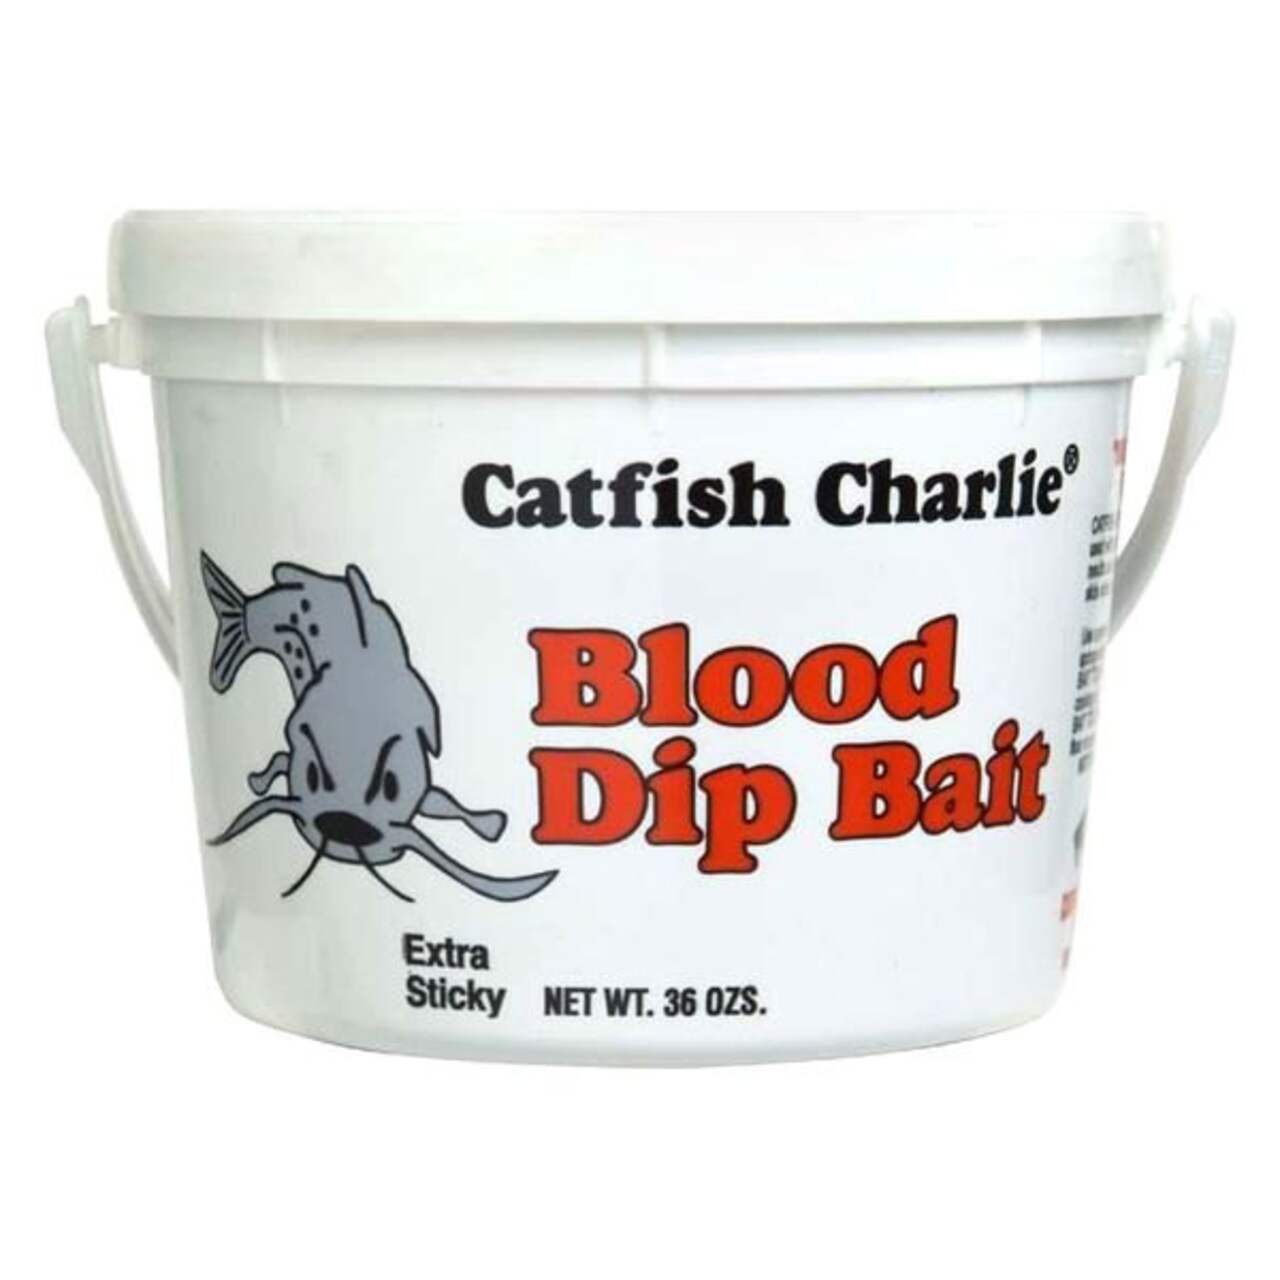 Catfish Charlie's Blood Dip Bait